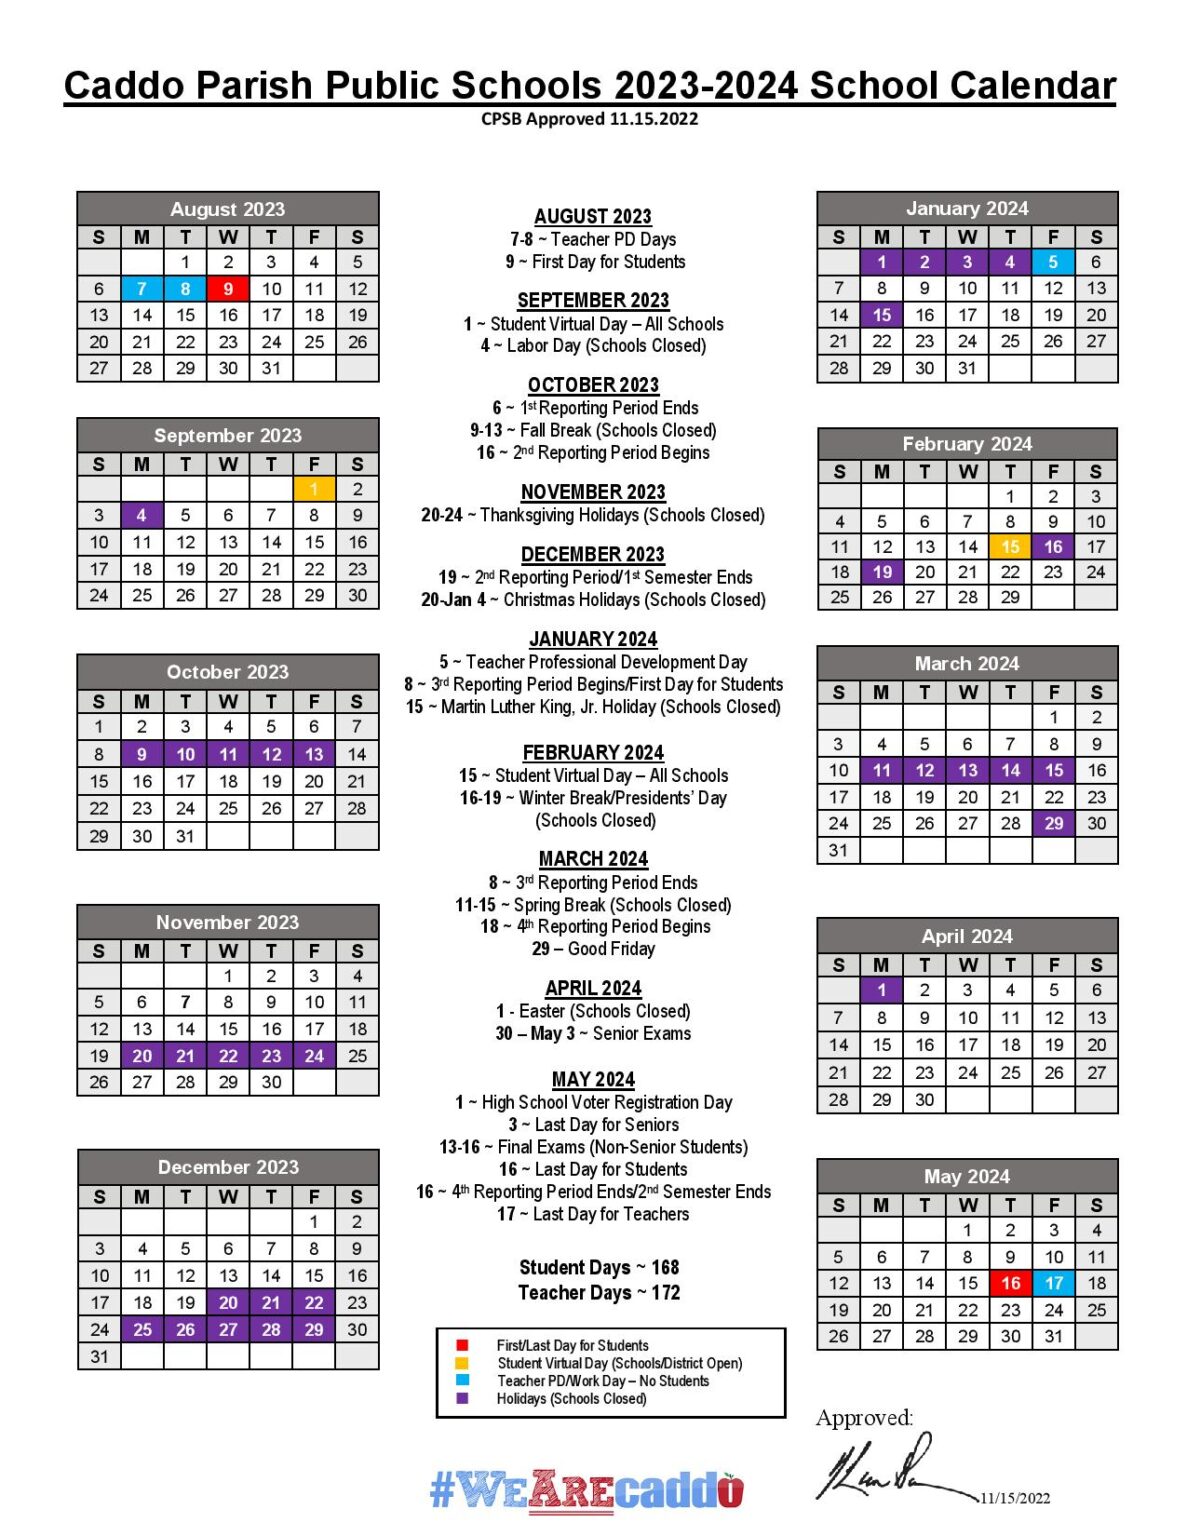 Caddo Parish Public Schools Calendar 20232024 (Holiday Breaks)